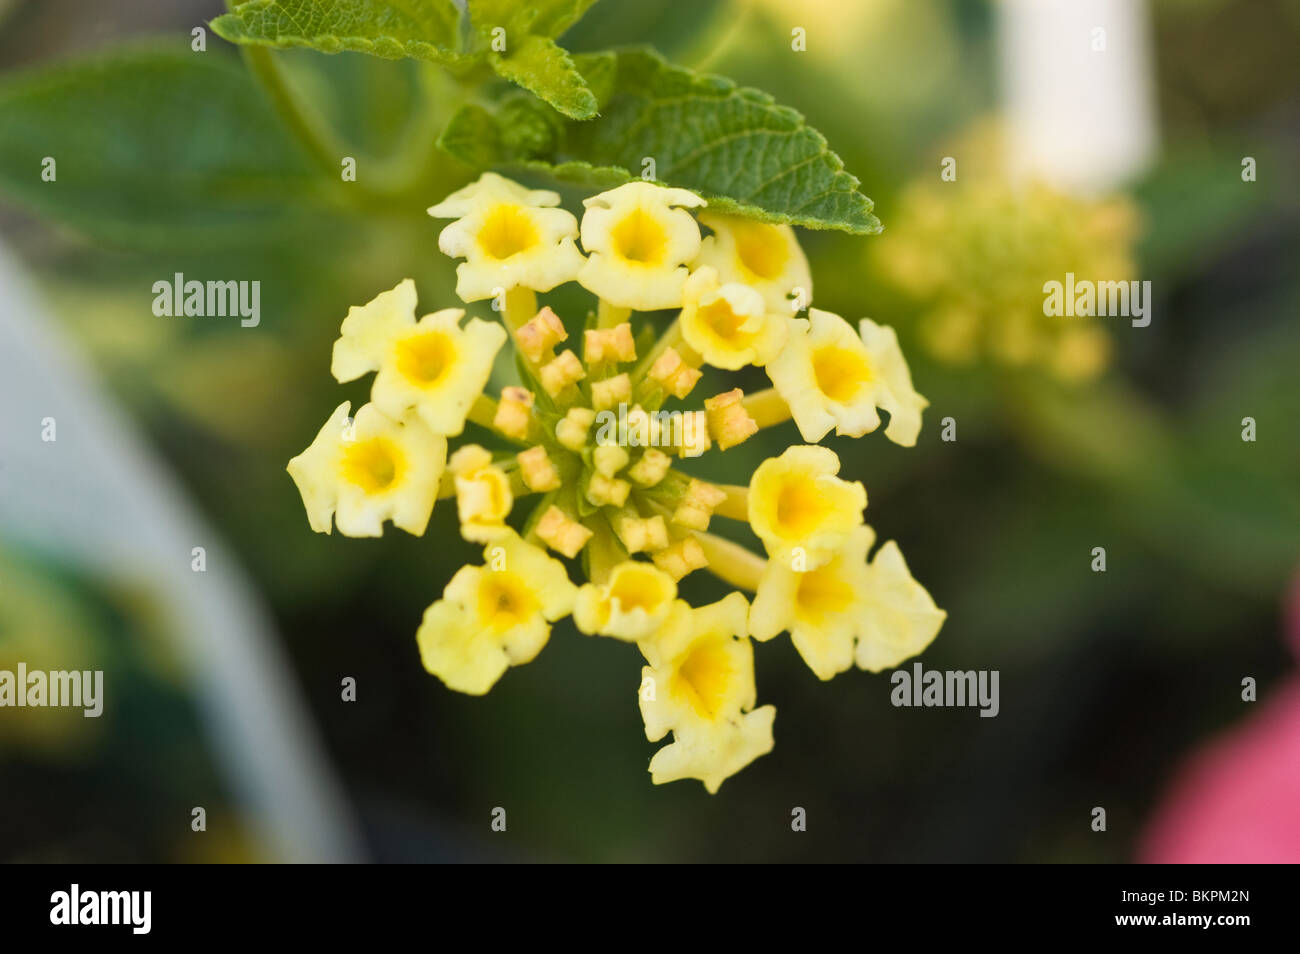 Yellow flowers of Lantana camara Stock Photo